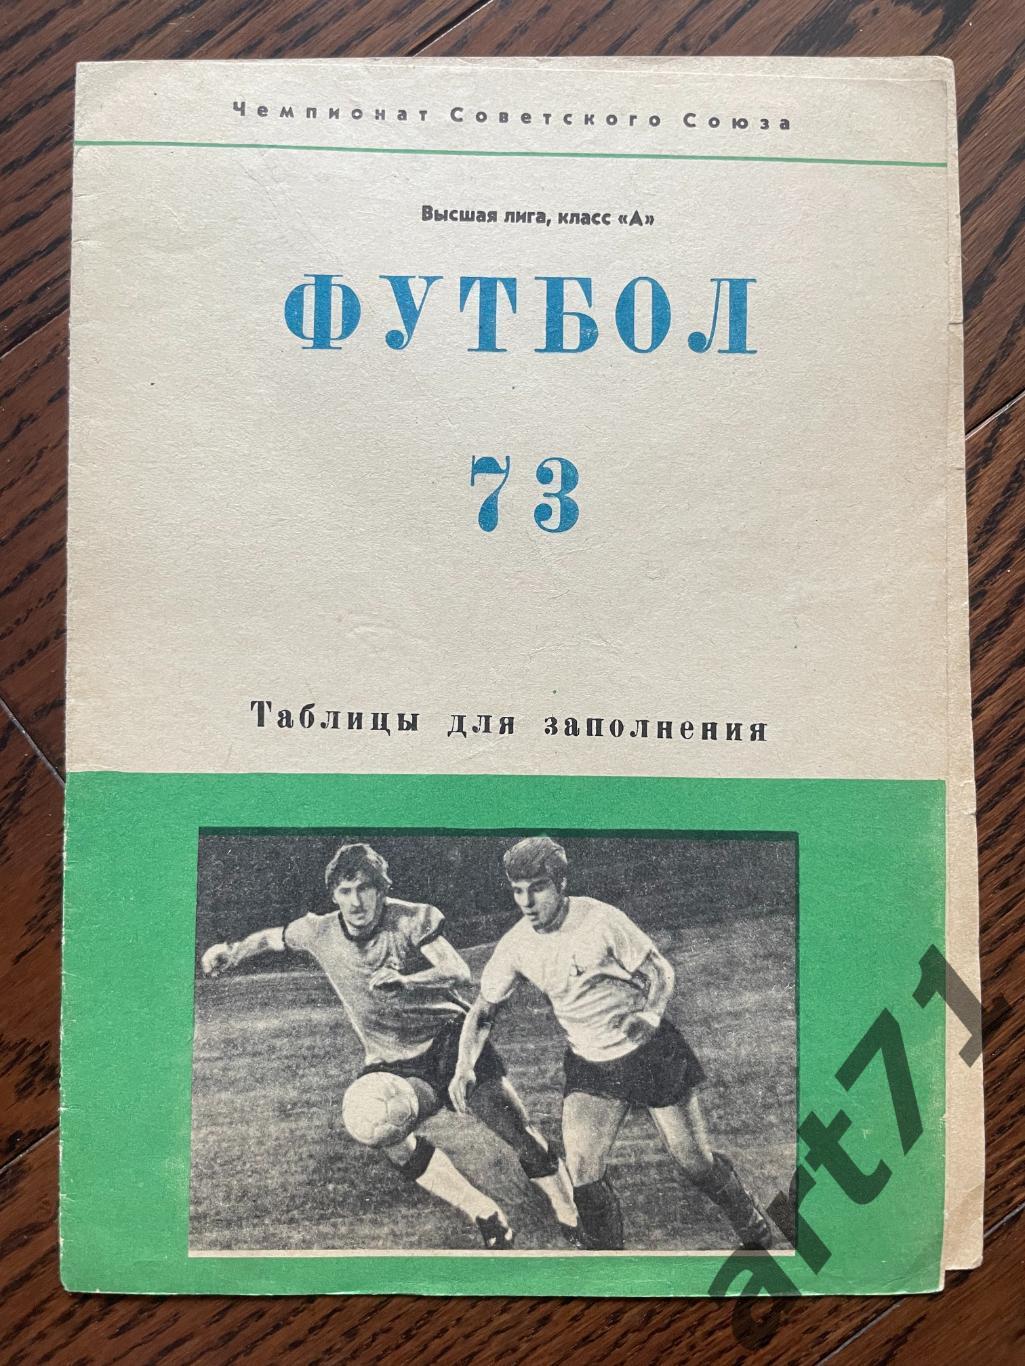 Шахтер Донецк 1973, таблица для заполнения, календарь игр